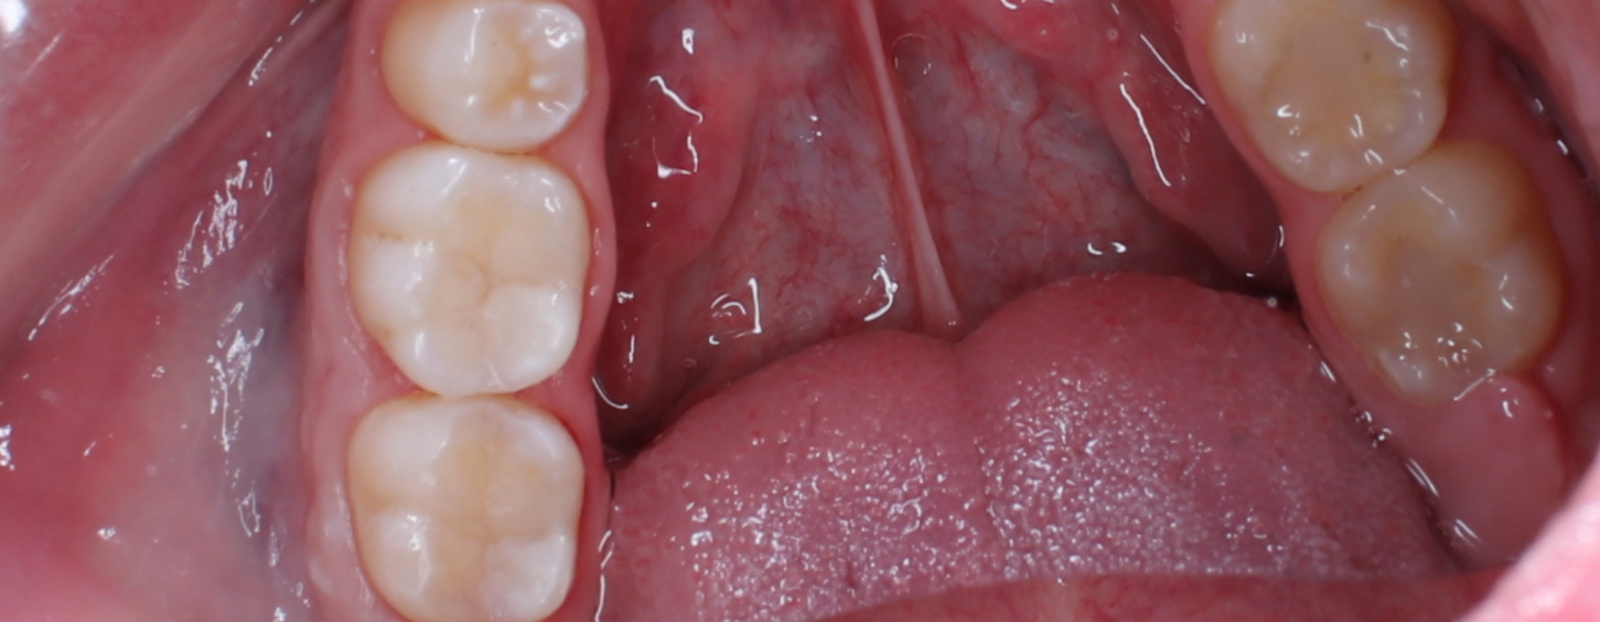 Лечение кариеса на жевательных зубах 35, 36, 37